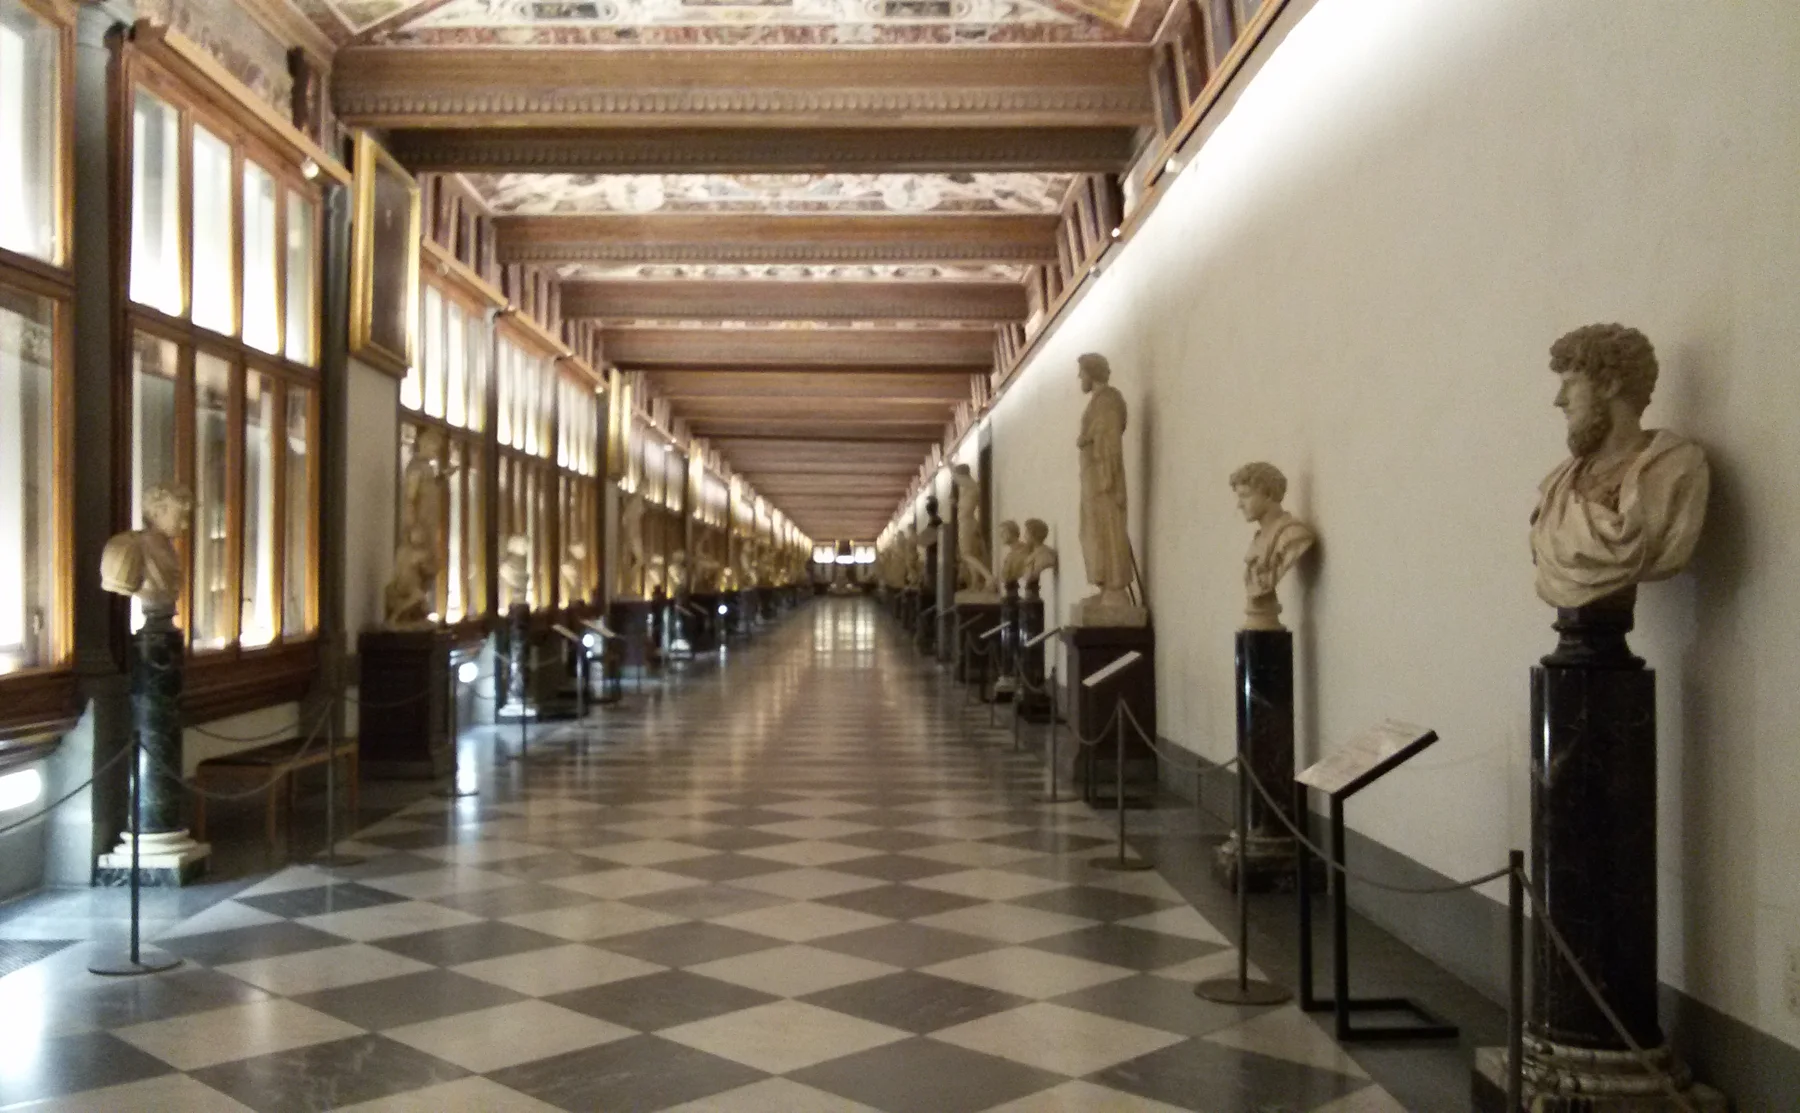 Uffizi Gallery and Aperitif - 262492